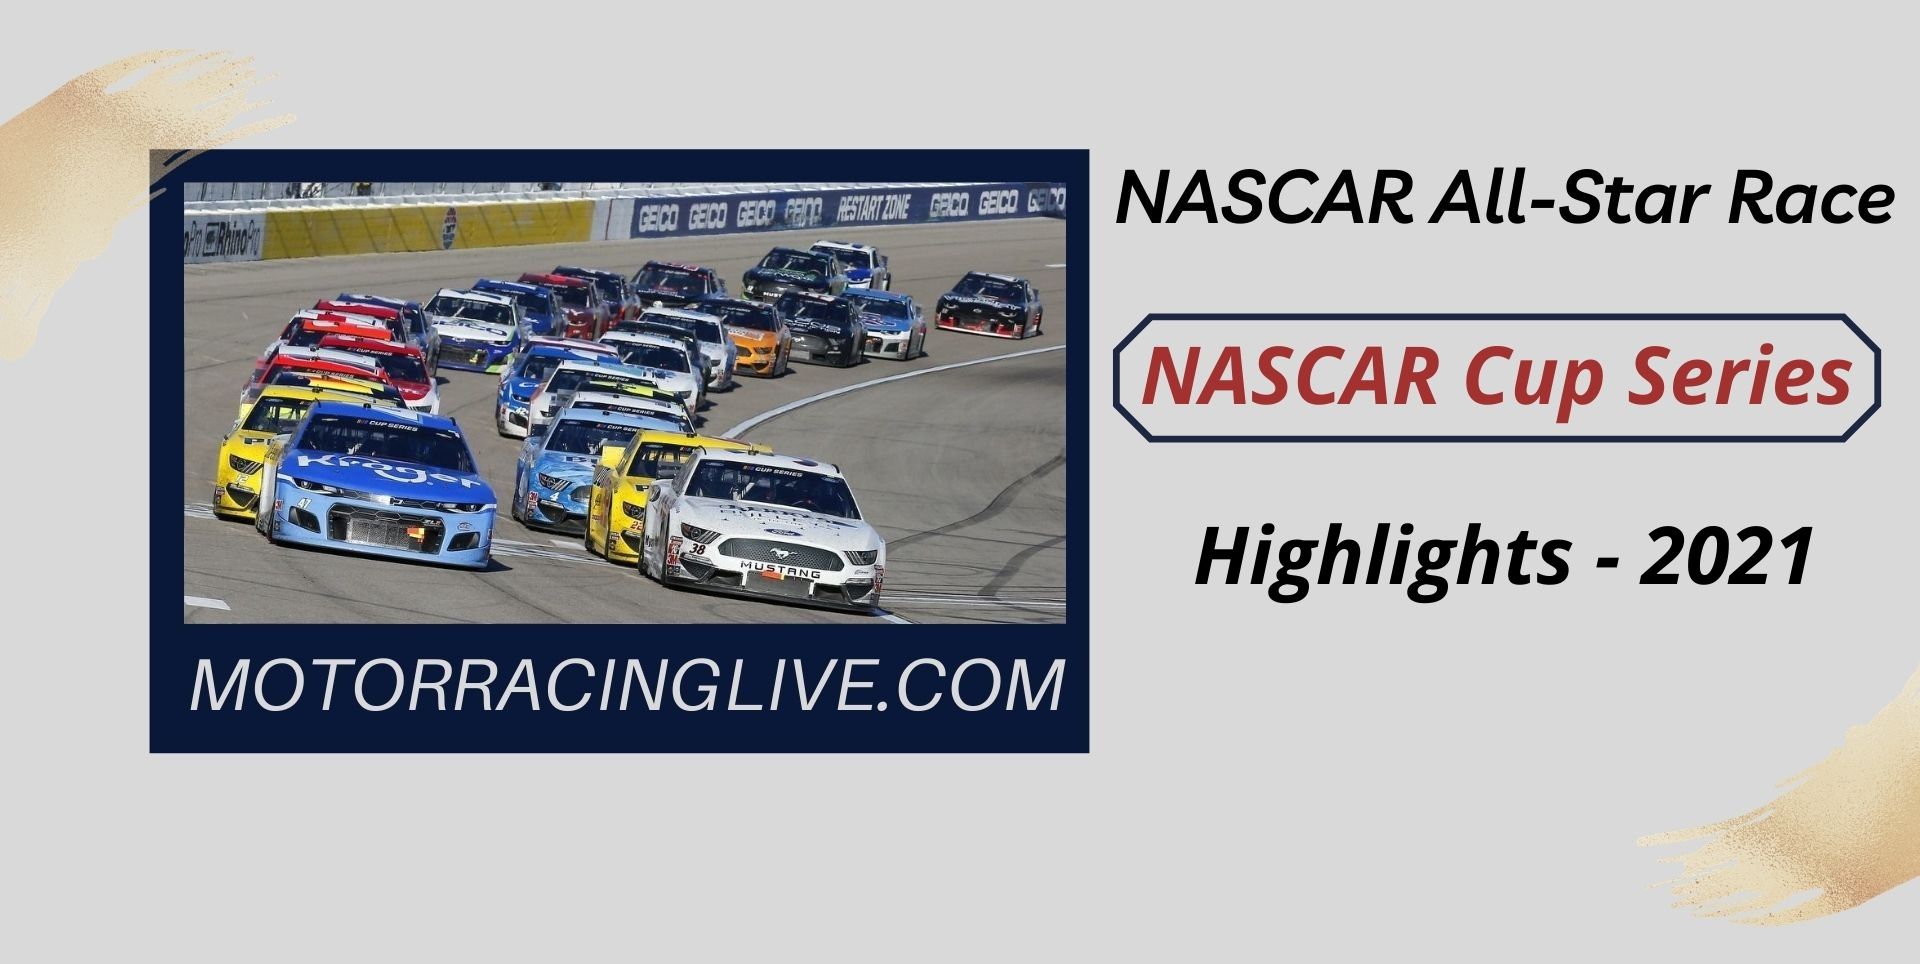 All Star Race Highlights 2021 NASCAR Cup Series